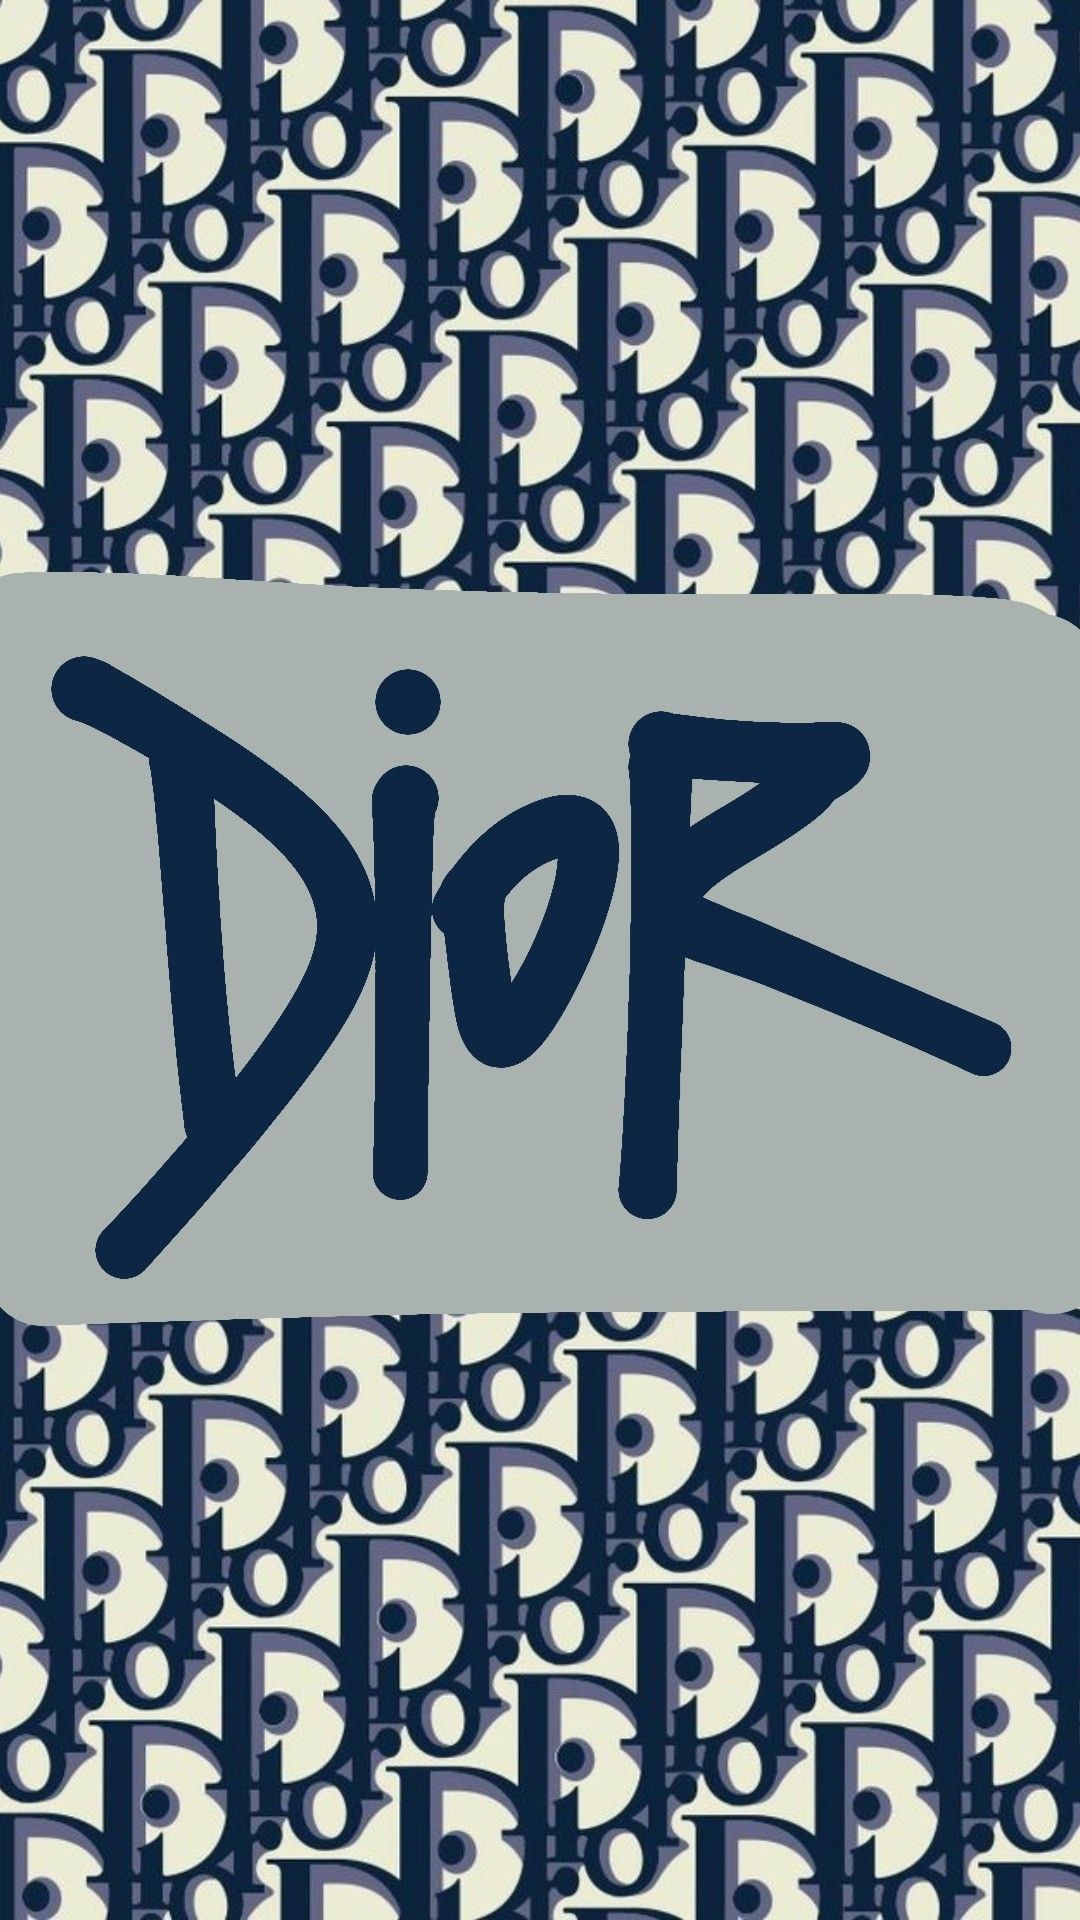 Hình nền dior: Thương hiệu thời trang danh tiếng Dior đã không ngừng tạo ra những thiết kế thịnh hành cho hàng thế kỉ. Nếu bạn muốn trang trí màn hình của mình với những hình nền sang trọng và đẳng cấp của Dior, bạn đến đúng nơi rồi đấy. Khám phá ngay bộ sưu tập hình nền Dior mang phong cách đơn giản và tinh tế, đến từ các bộ sưu tập nổi tiếng nhất của Dior.